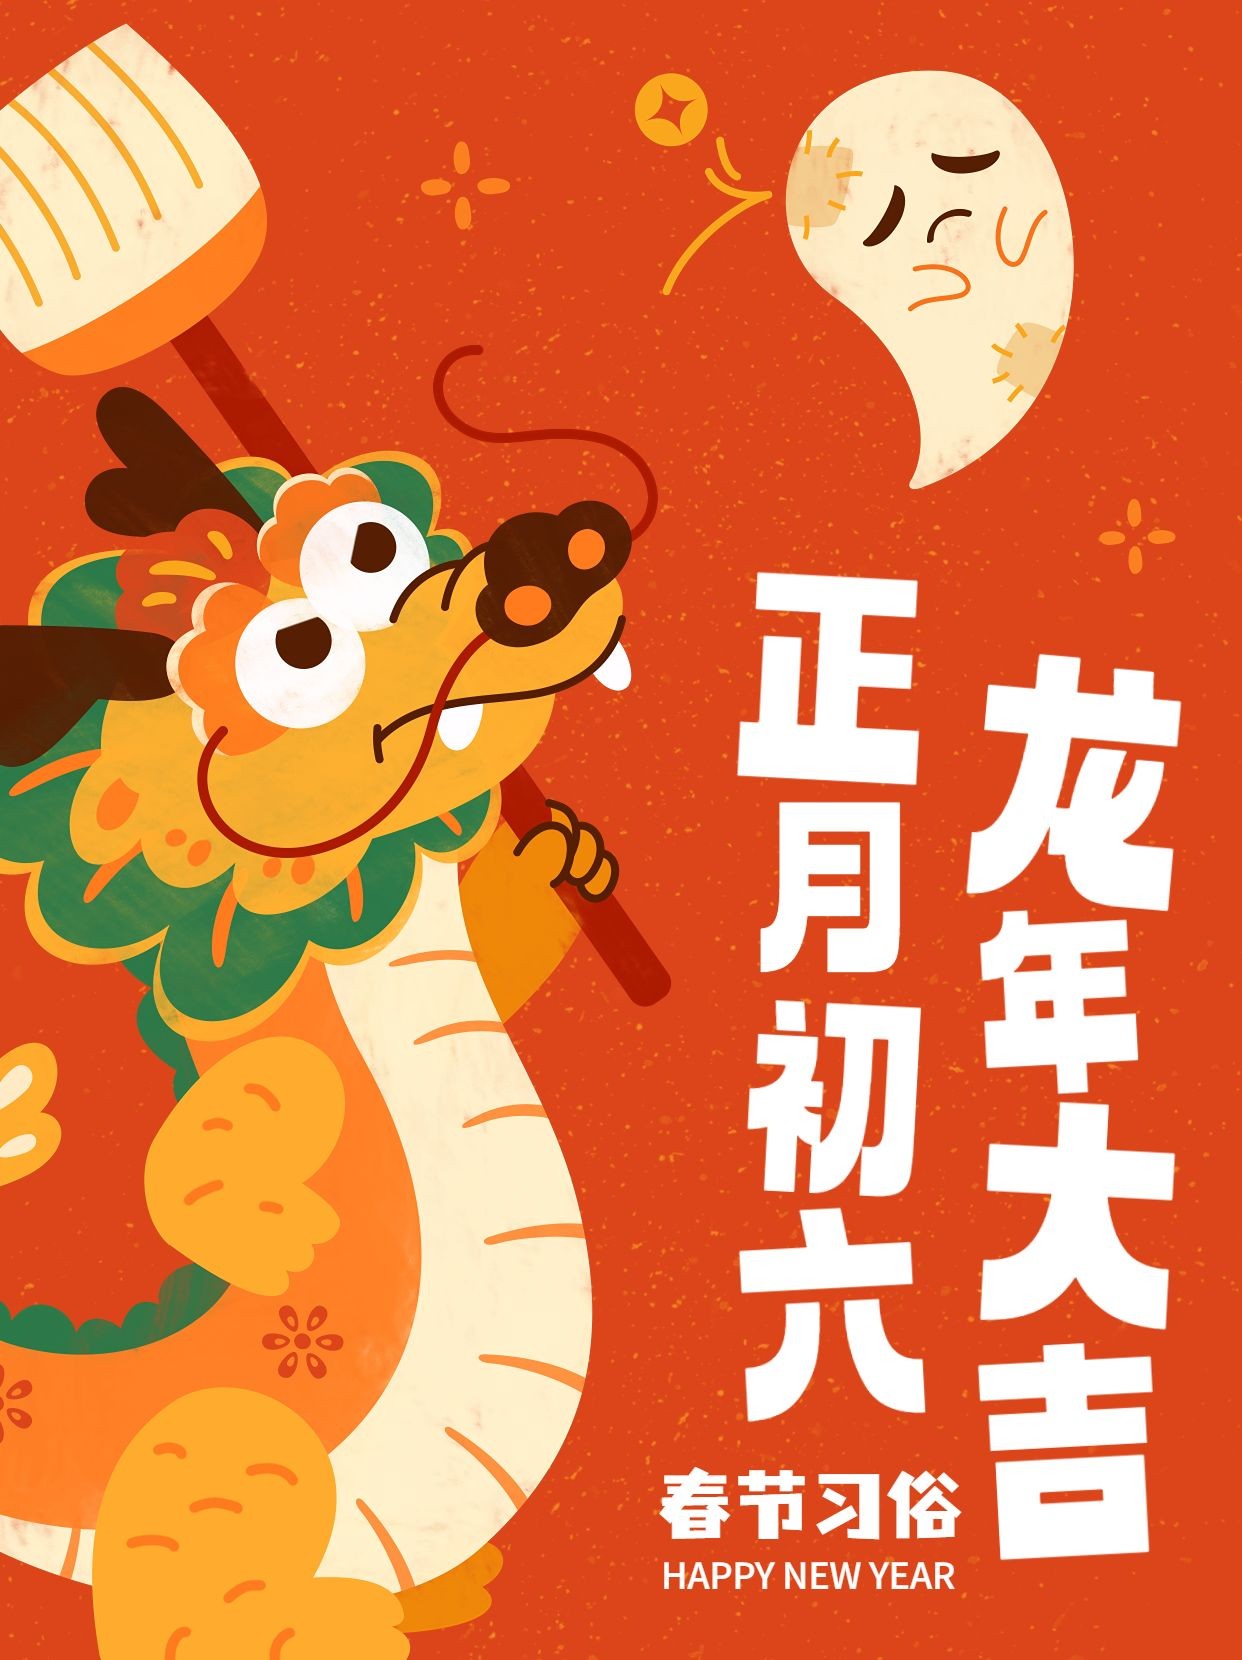 春节正月初六习俗科普套系小红书封面